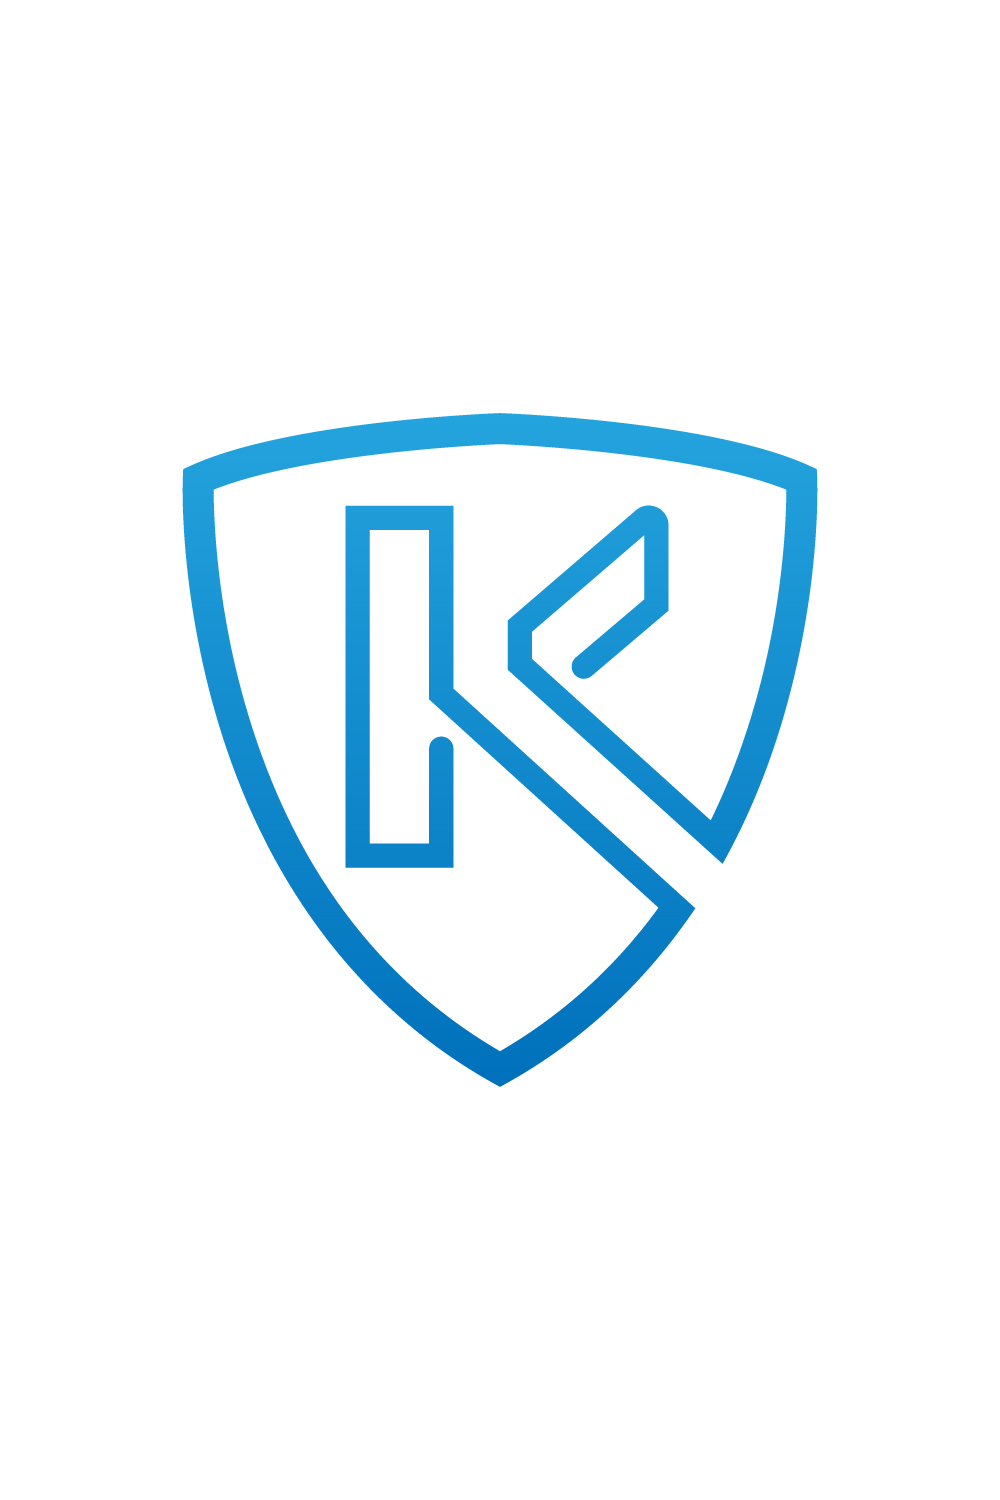 Letter K logo pinterest preview image.